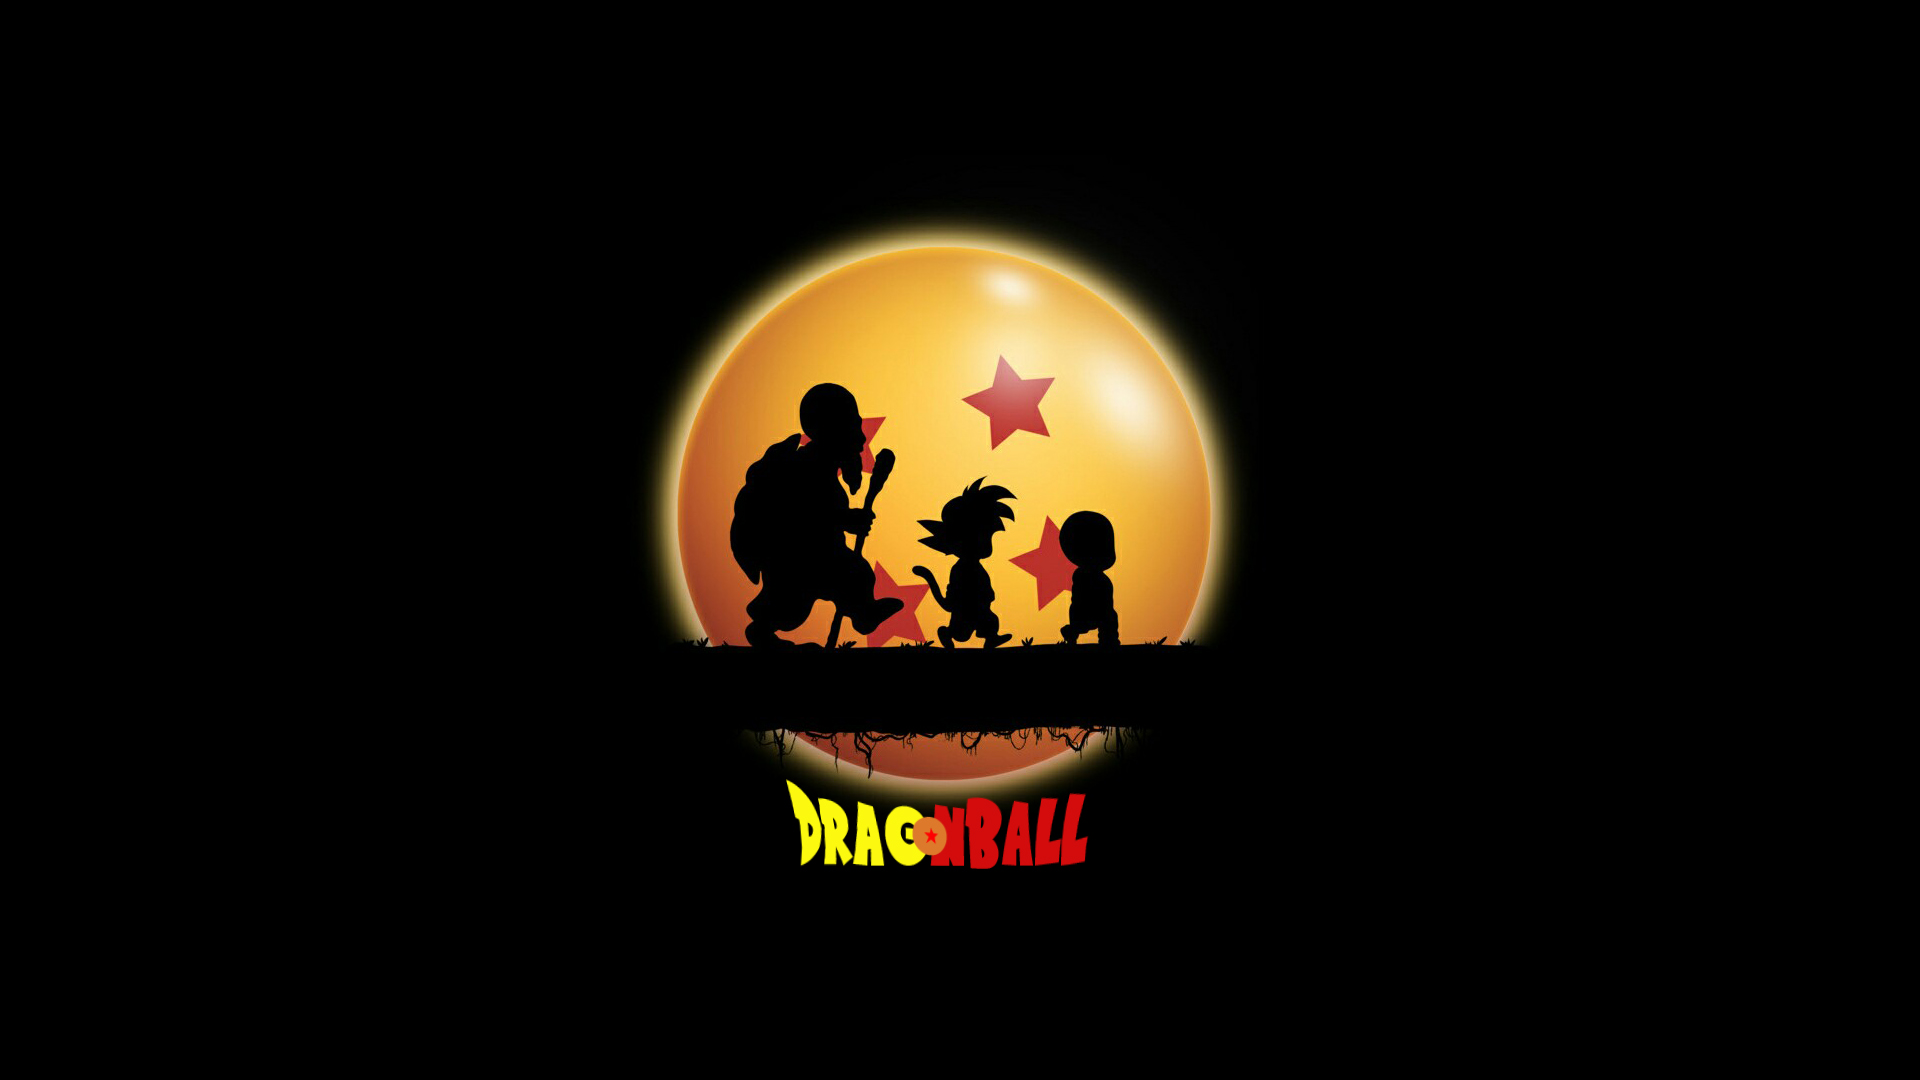 dragon ball, master roshi (dragon ball), anime, goku, krillin (dragon ball)